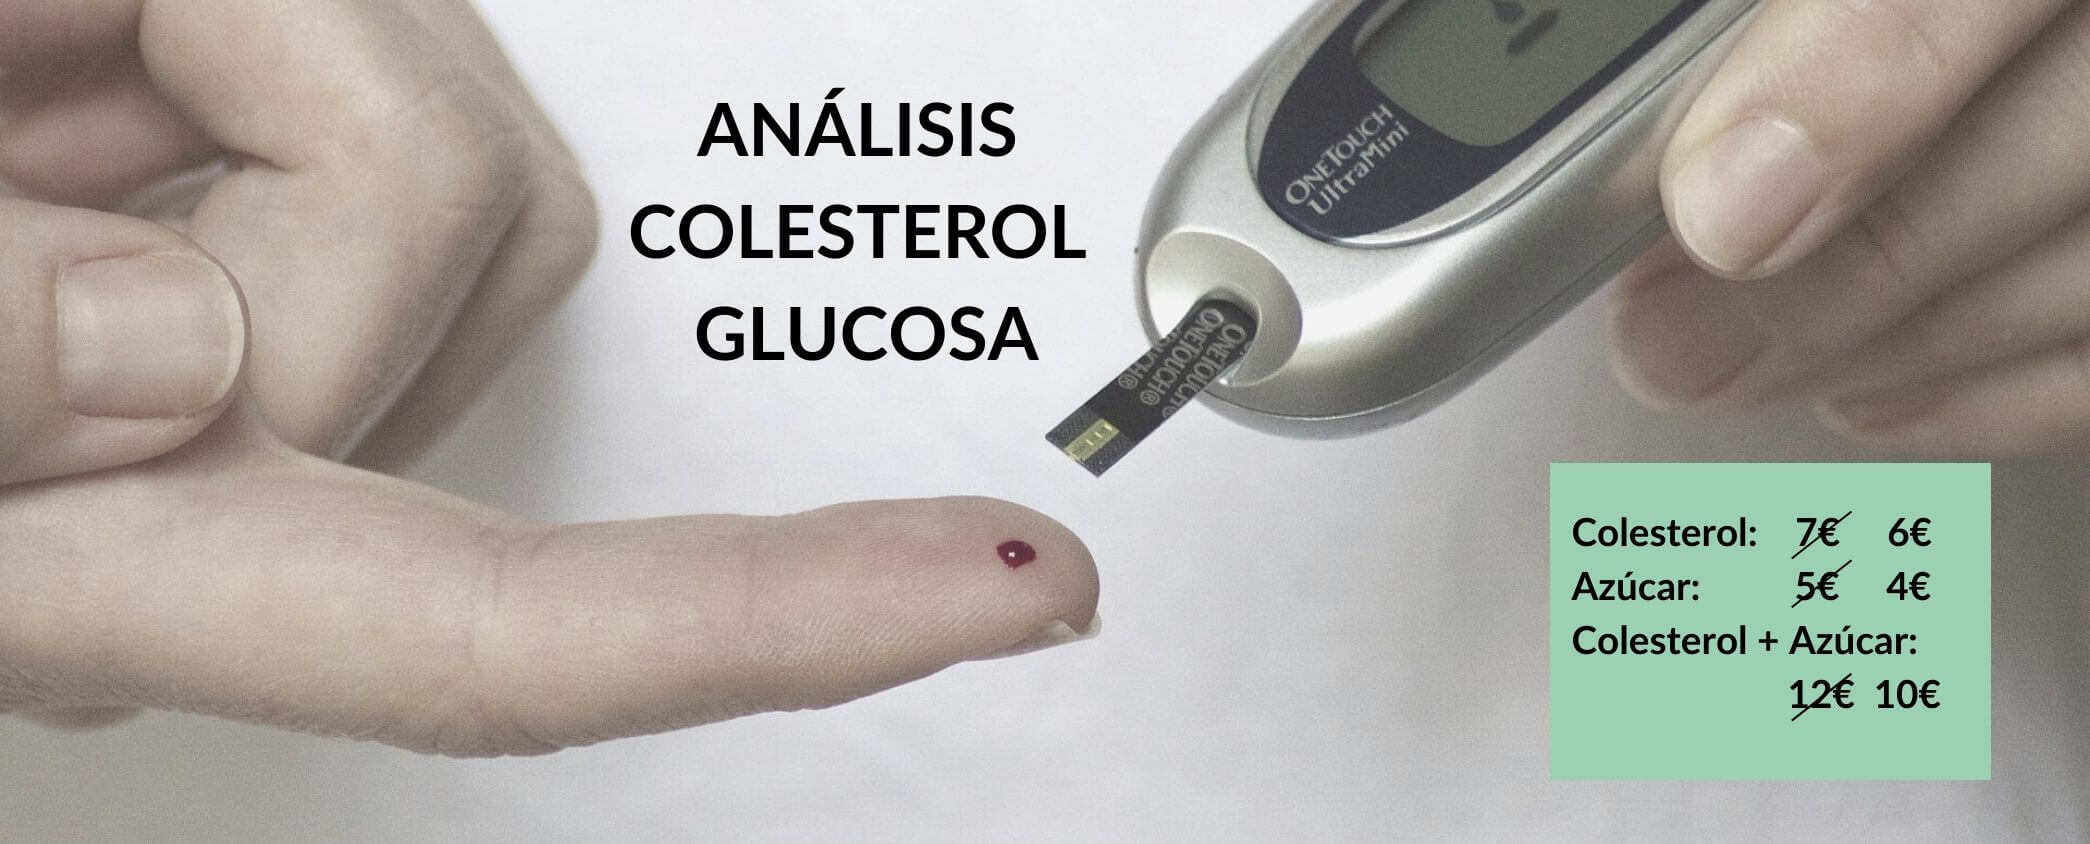 análisis colesterol y glucosa